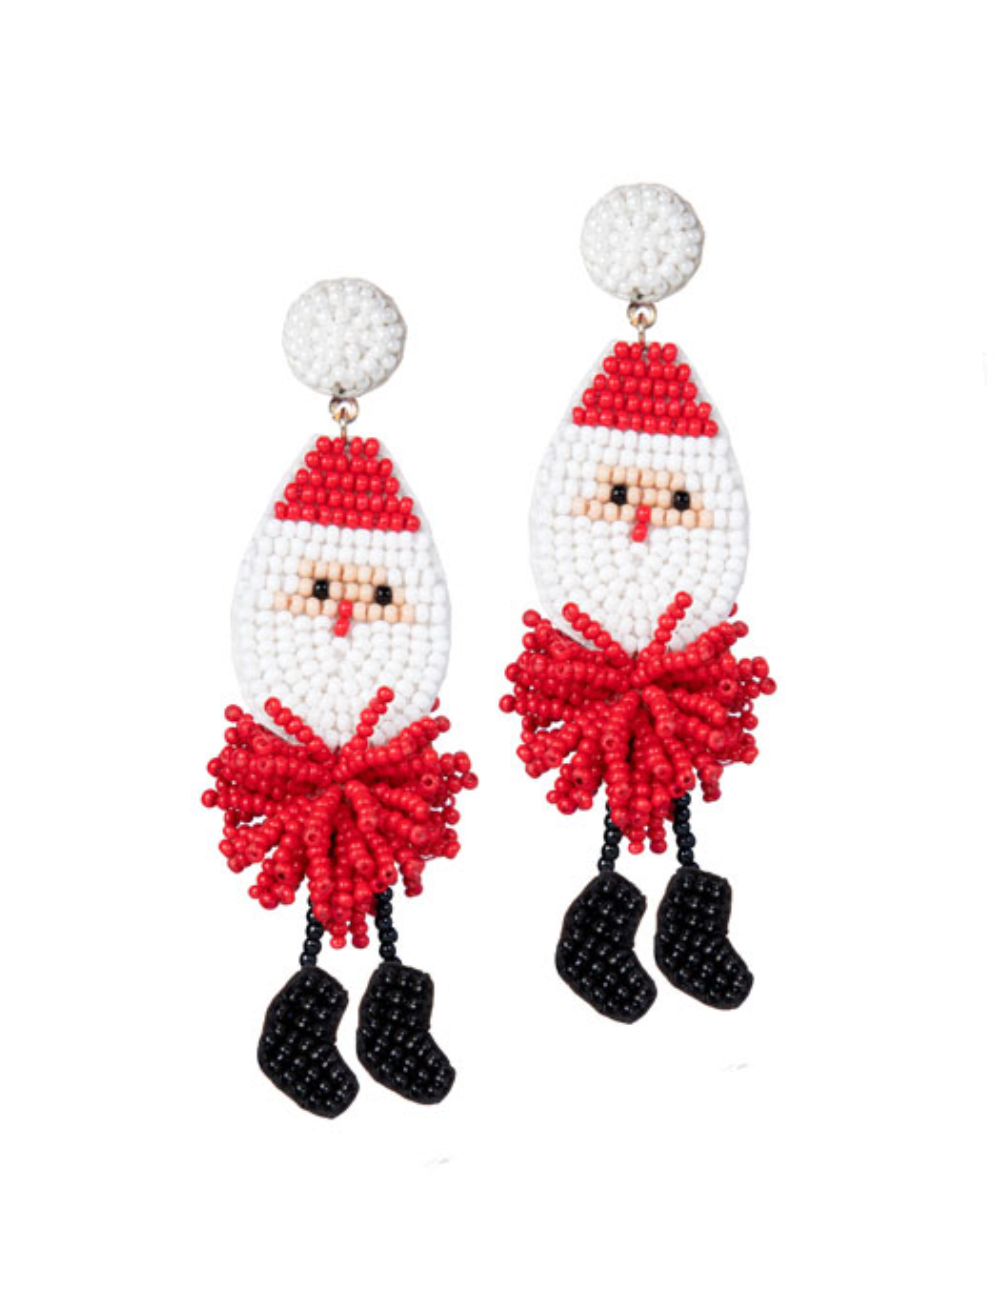 Red Santa Claus Earrings